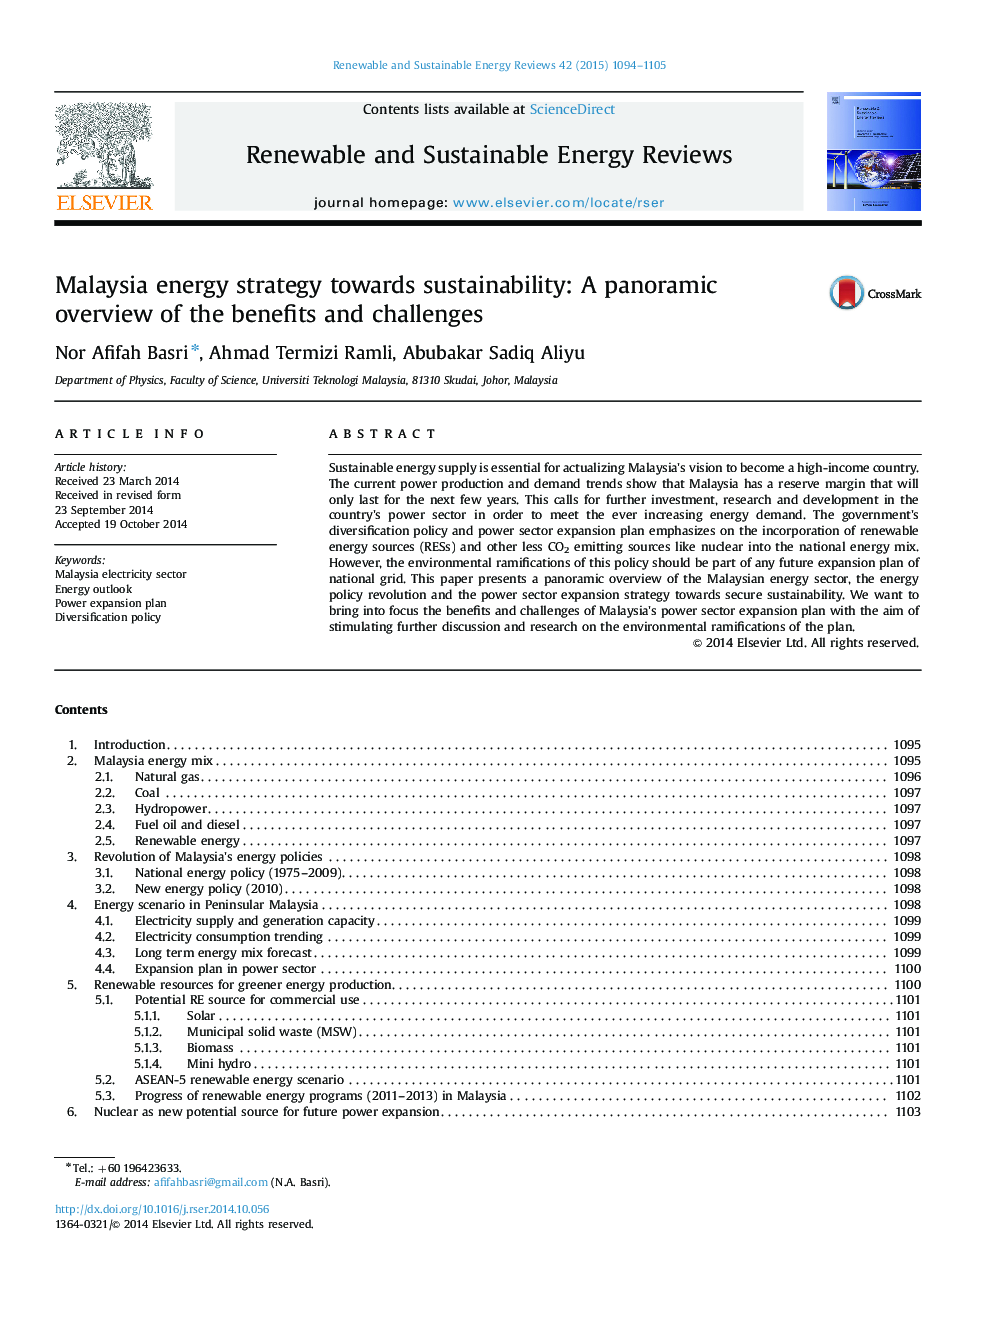 استراتژی انرژی مالزی نسبت به پایداری: یک نمای کلی از مزایا و چالش های پانورامیک 